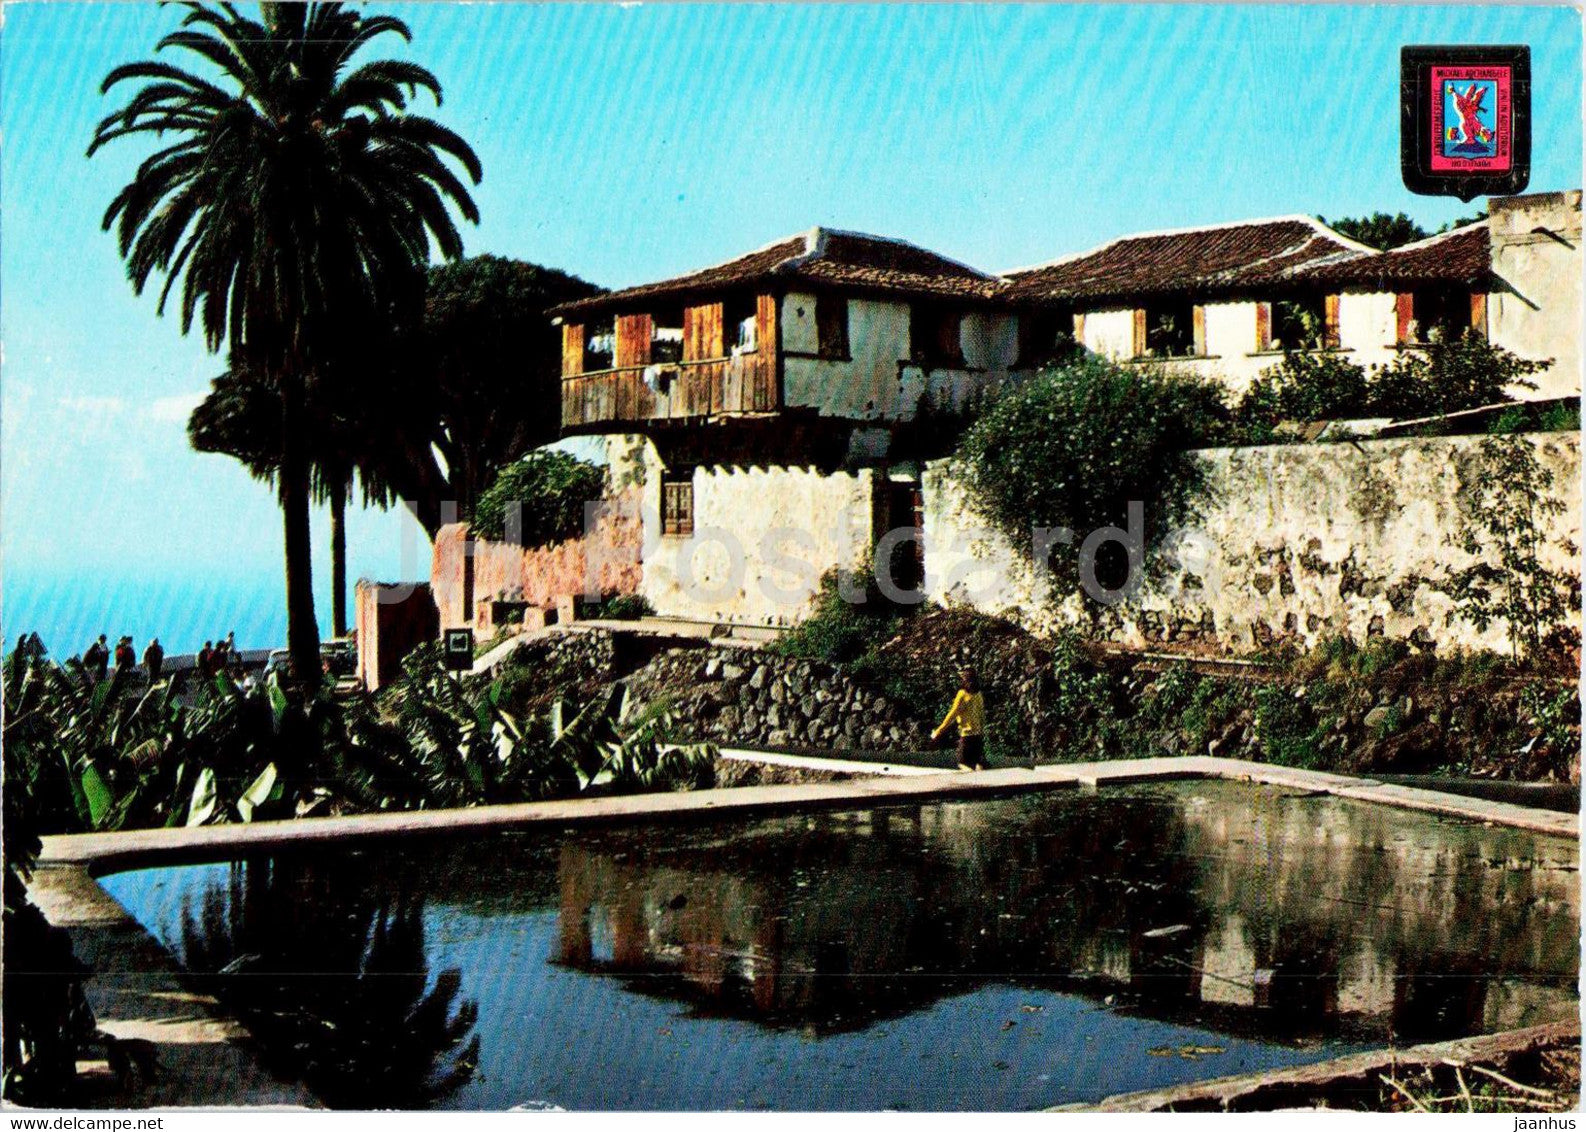 Icod de los Vinos - Rincon Tipico - Typical Corner - Tenerife - 244 - Spain - unused - JH Postcards